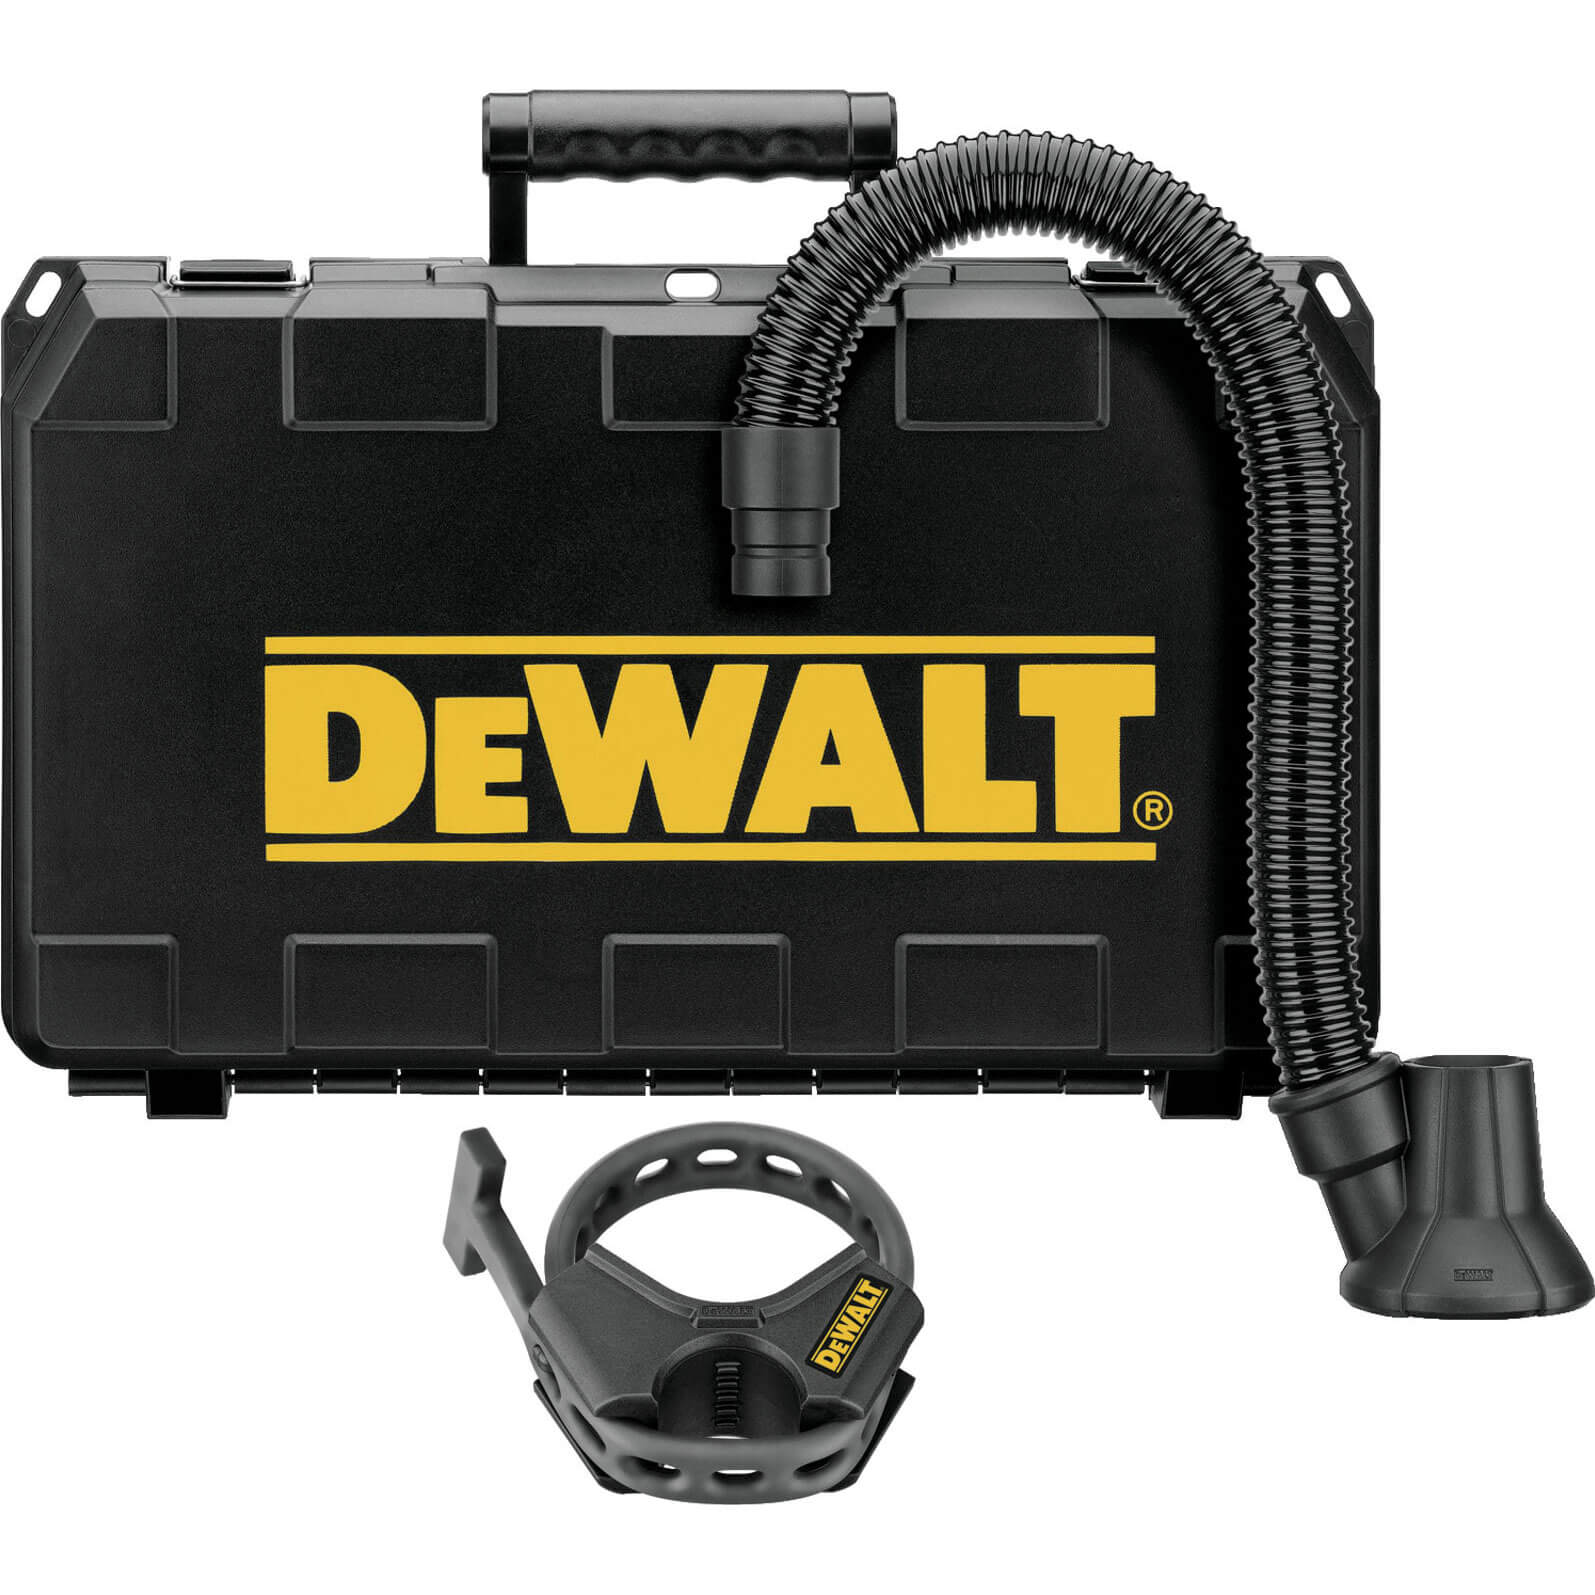 DeWalt DWH052 Demolition Hammer Dust Extraction